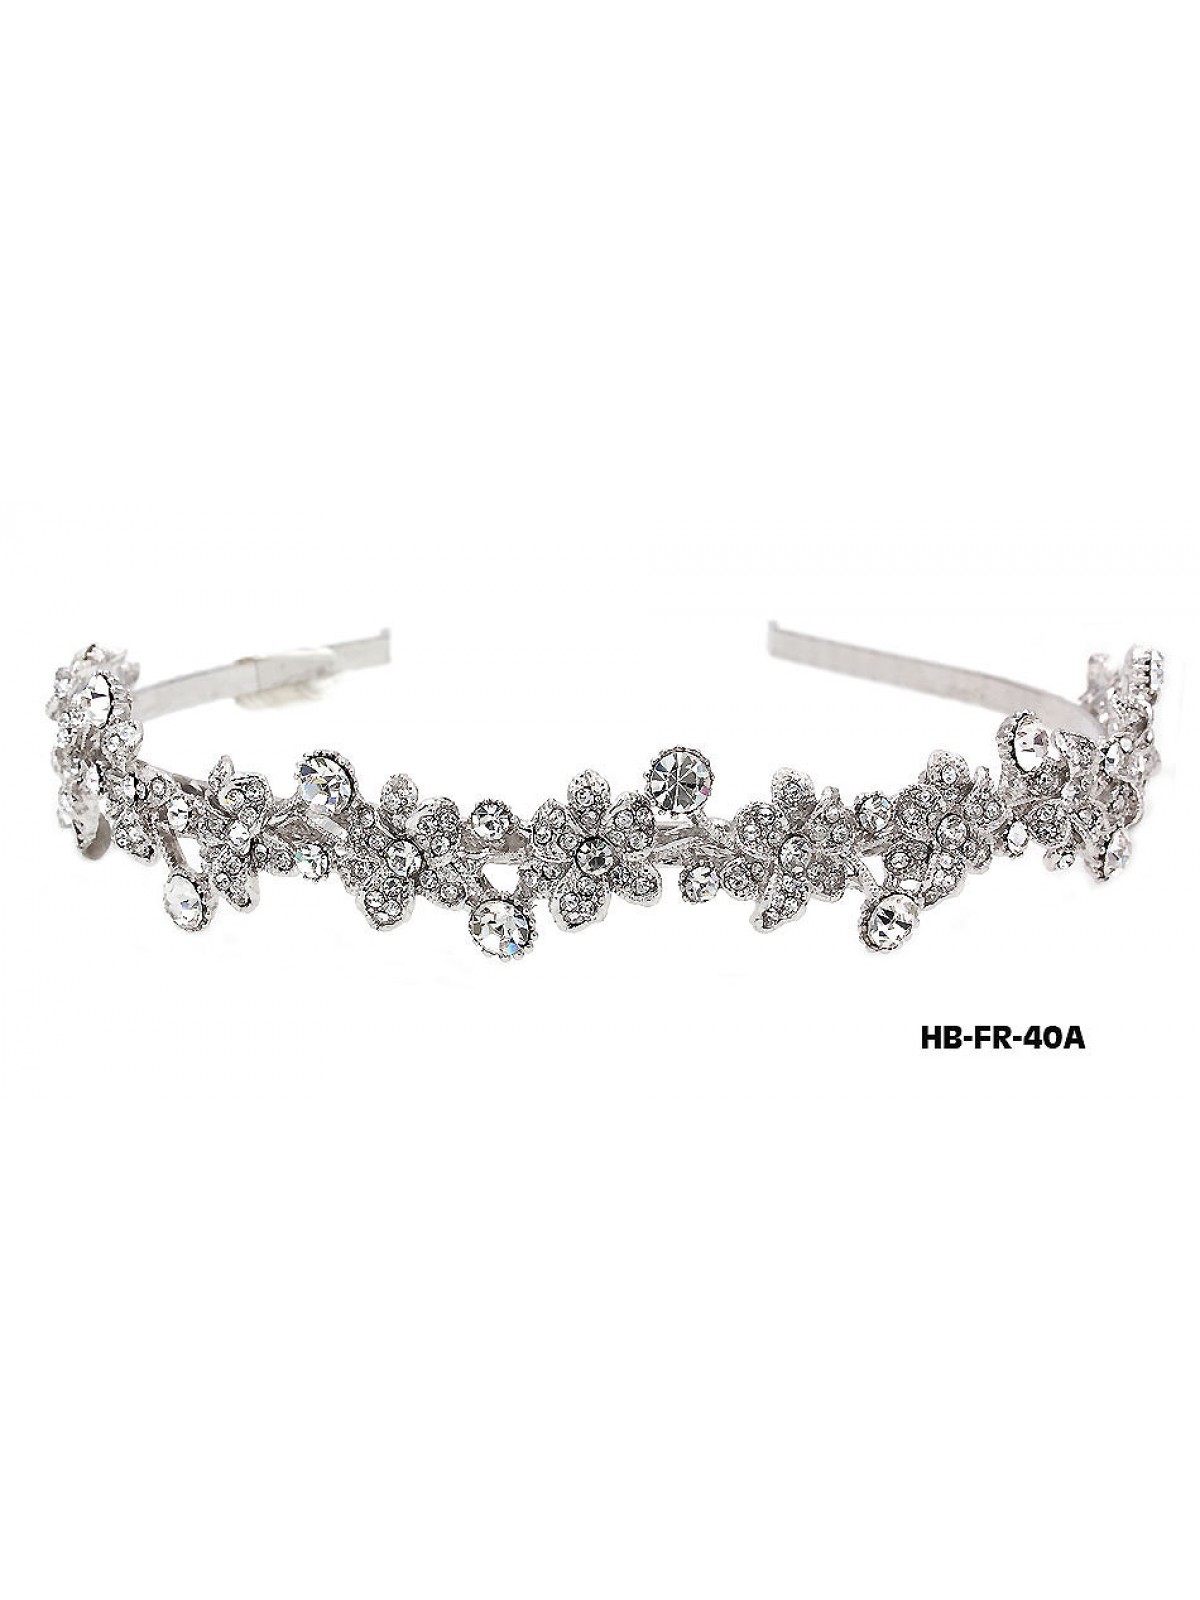 Head Band – Bridal Headpiece w/ Austrian Crystal Stones Flower - HB-FR-40A